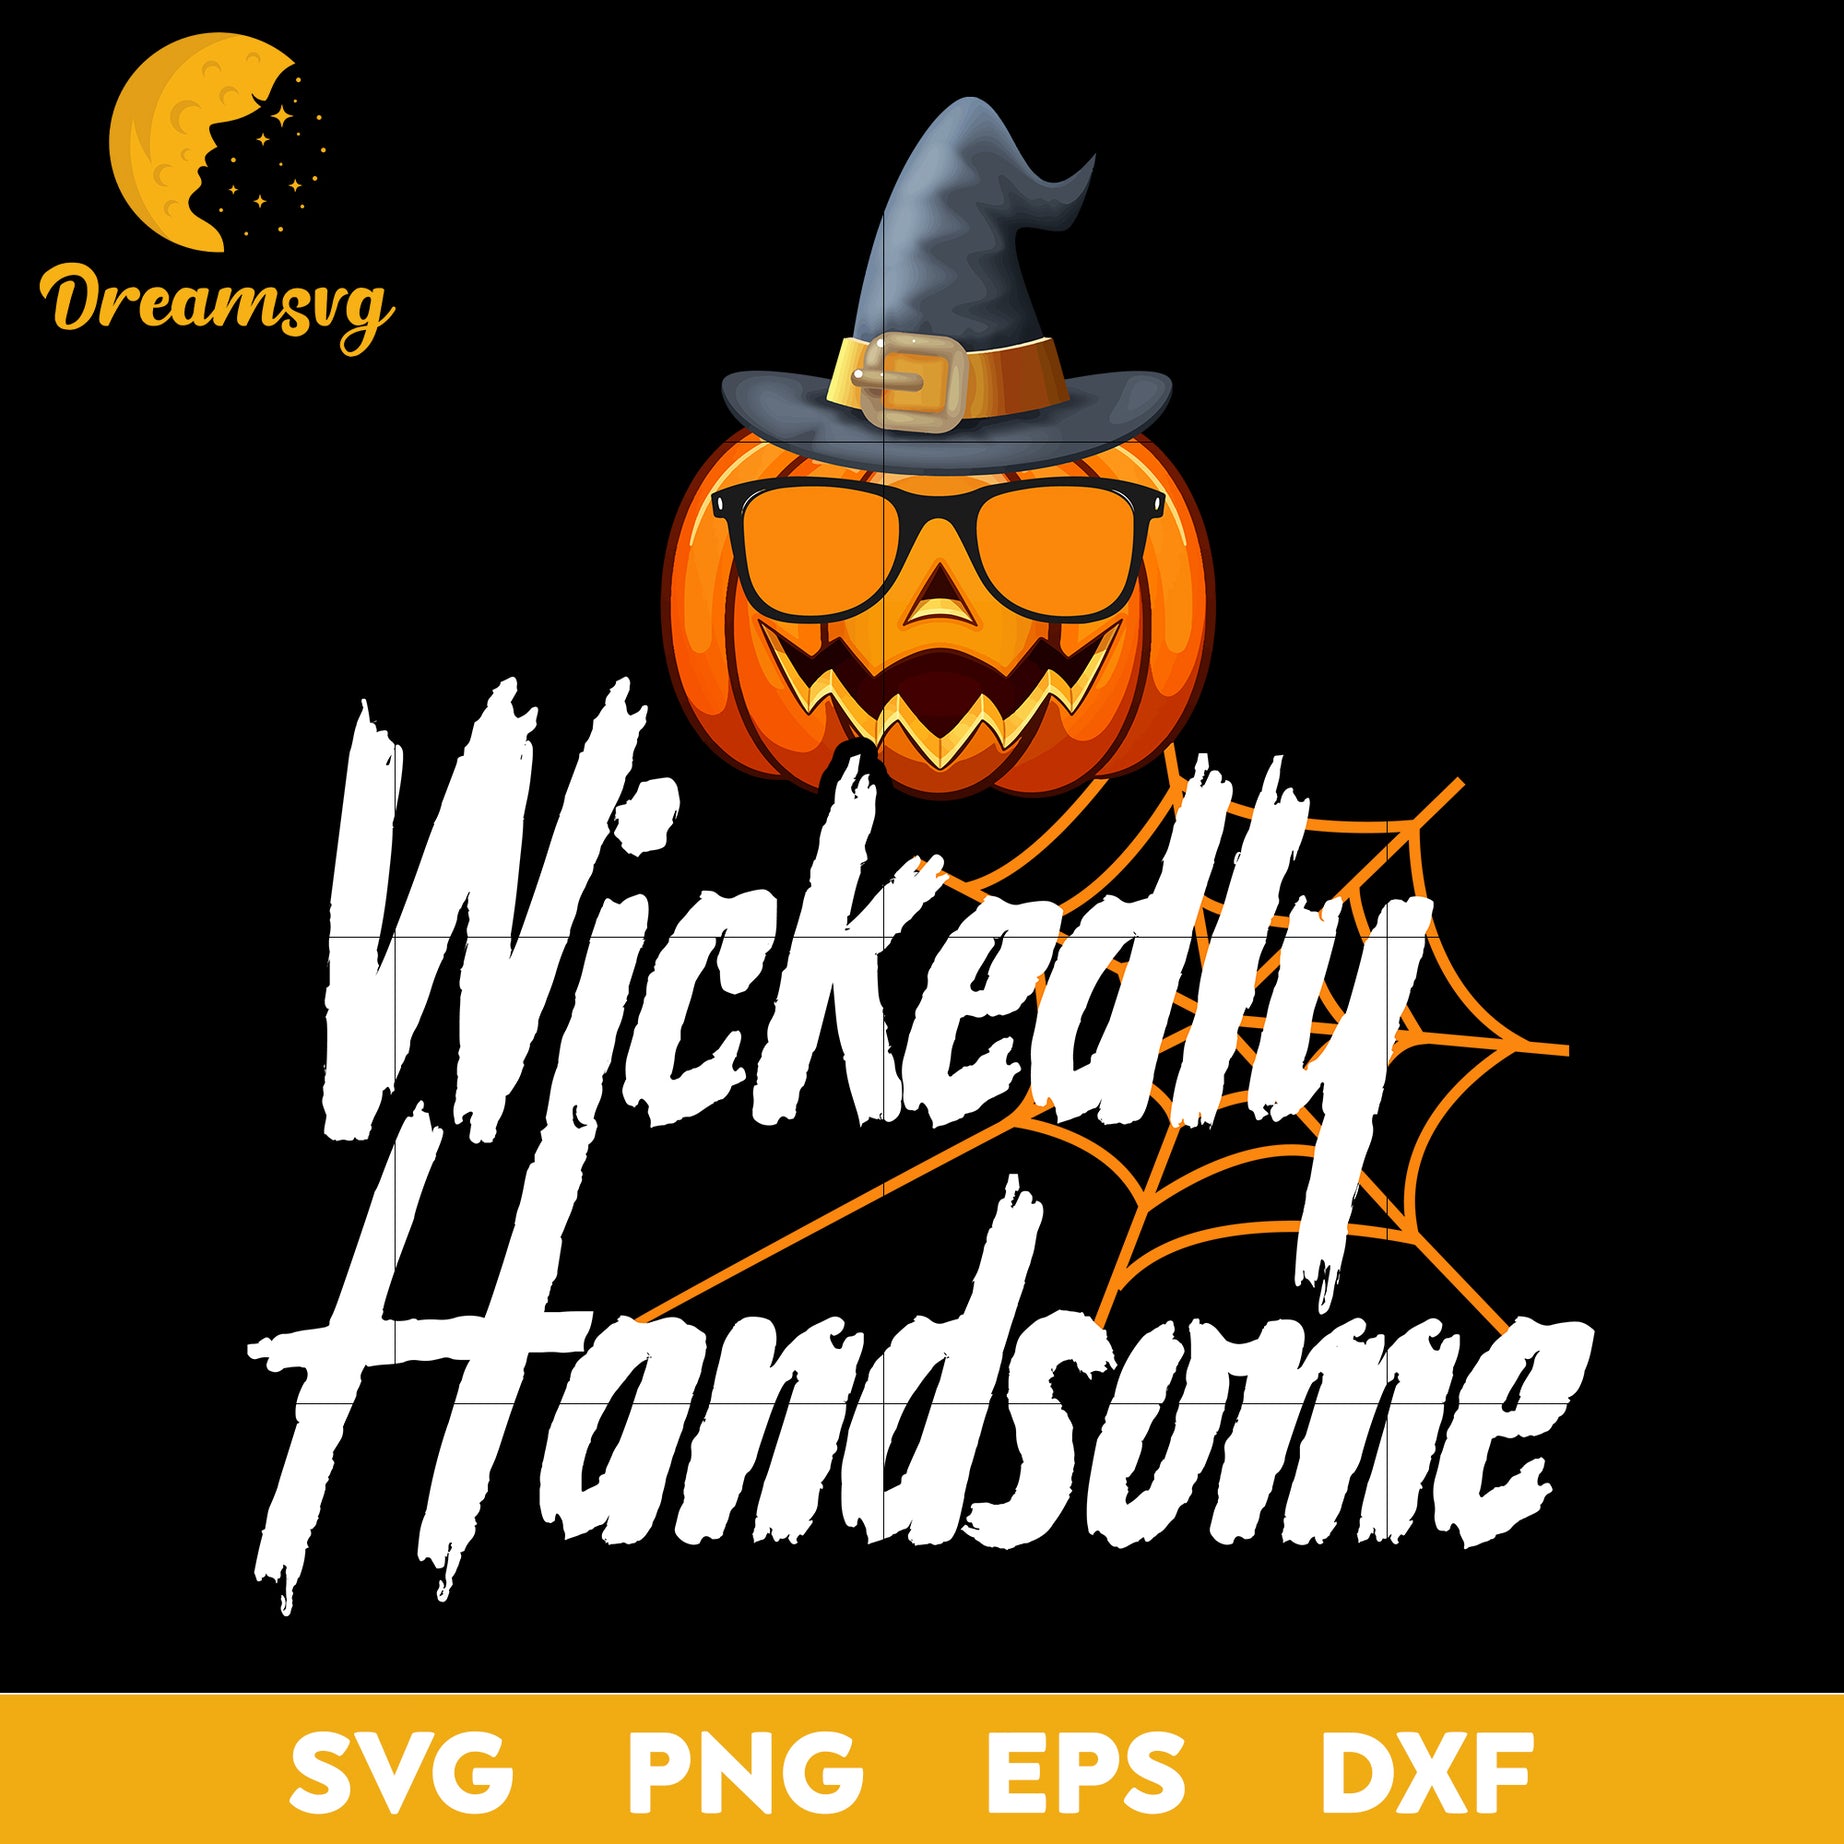 Wickedly handsome svg, Halloween svg, png, dxf, eps digital file.